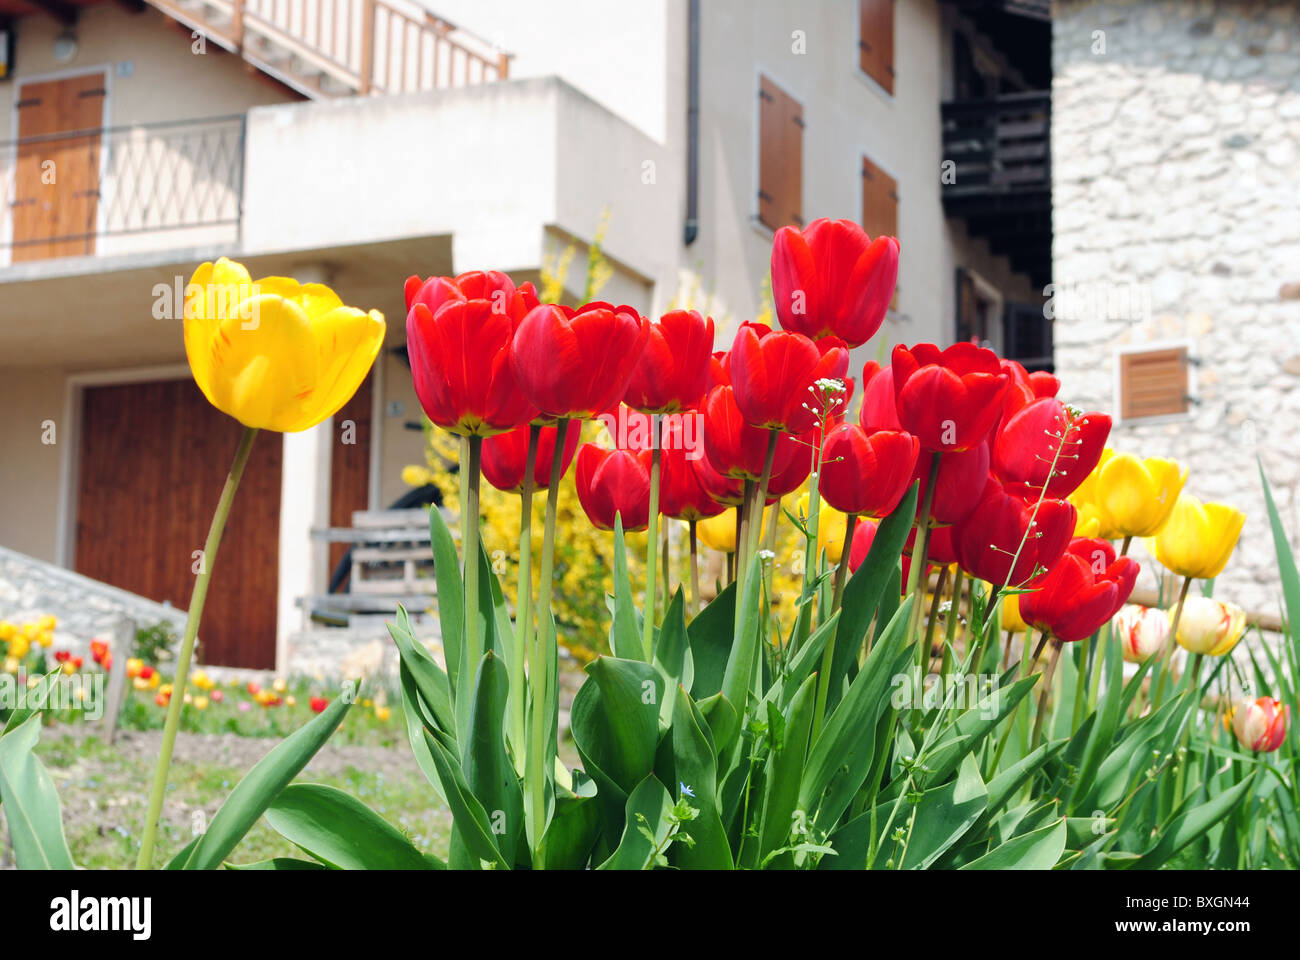 Tulipes rouges et jaunes avec sfonto logements dans une petite ville Banque D'Images